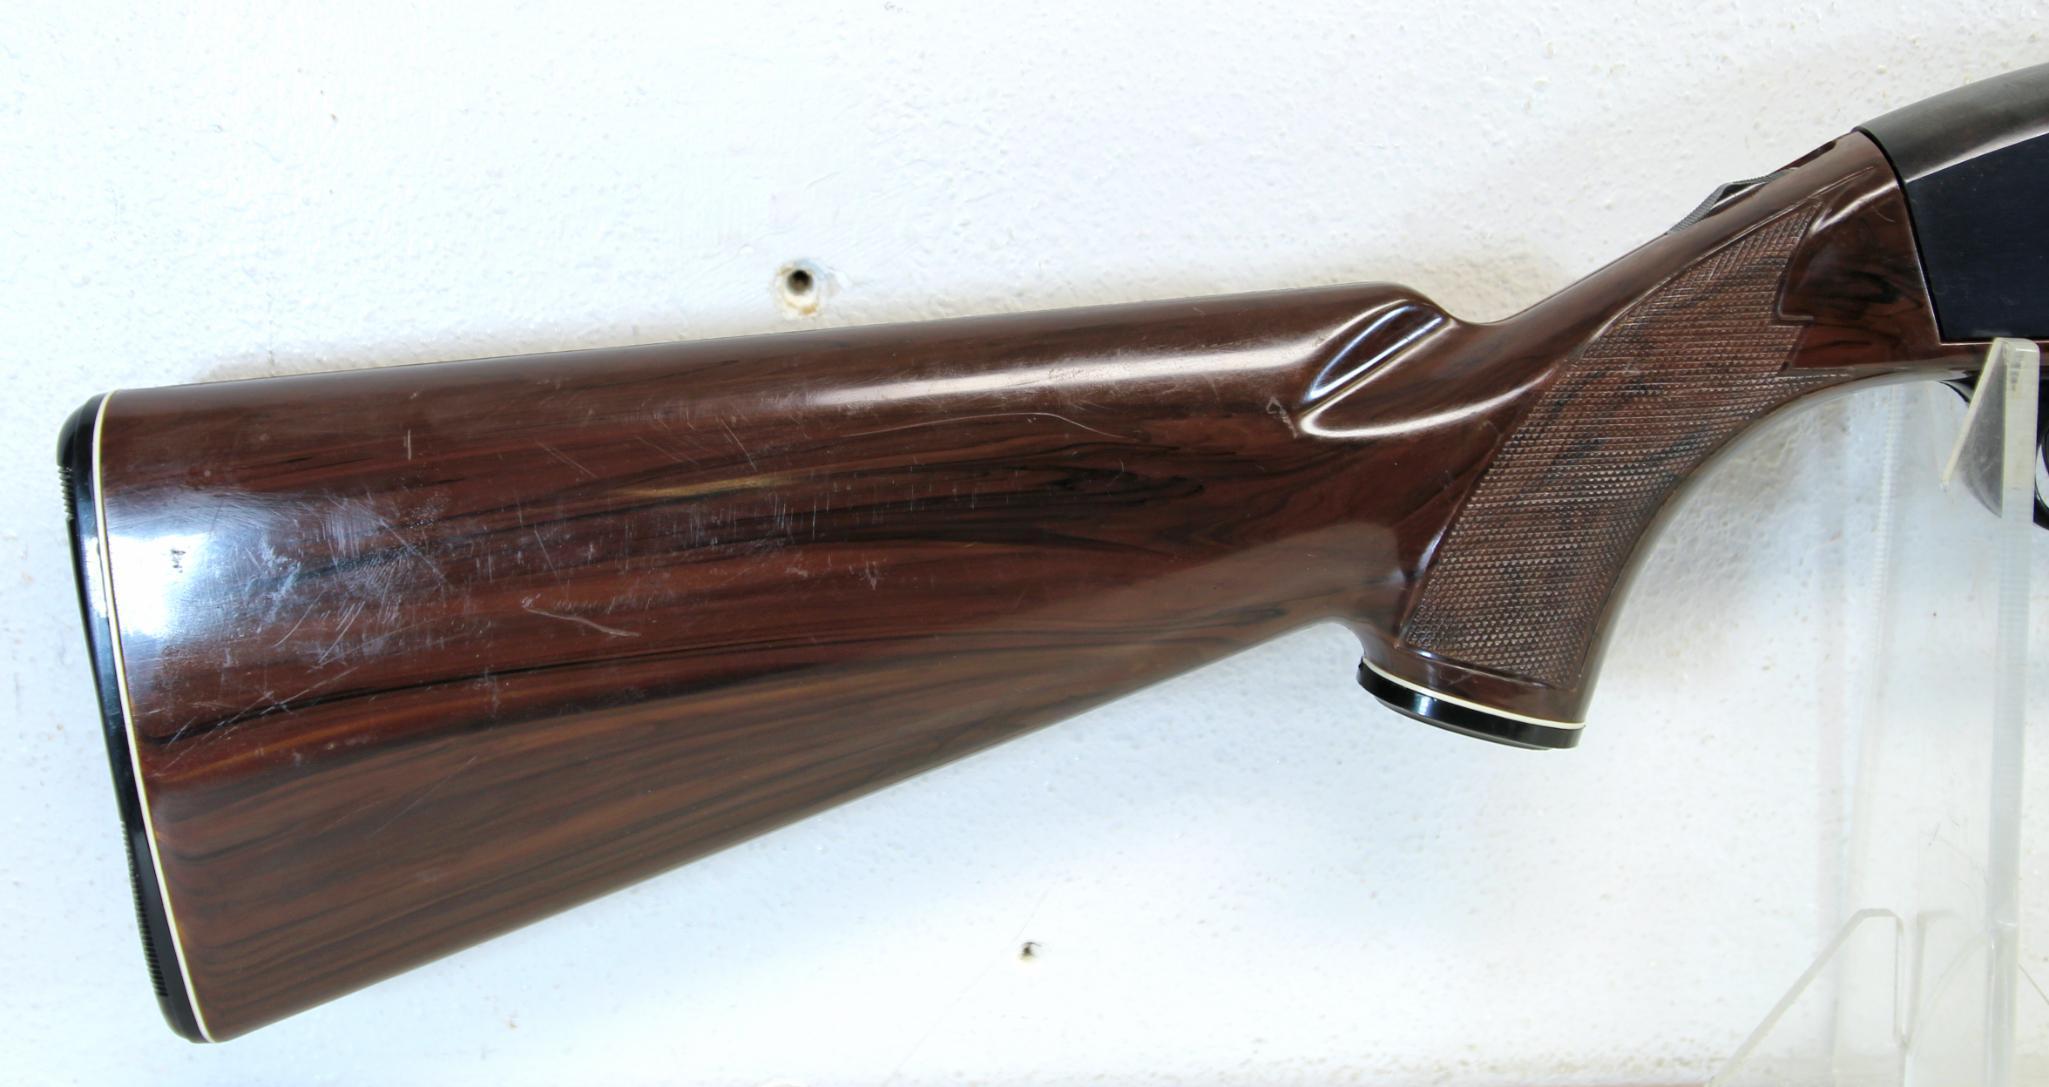 Remington Nylon 66 Bicentennial .22 LR Semi-Auto Rifle SN#2594735...